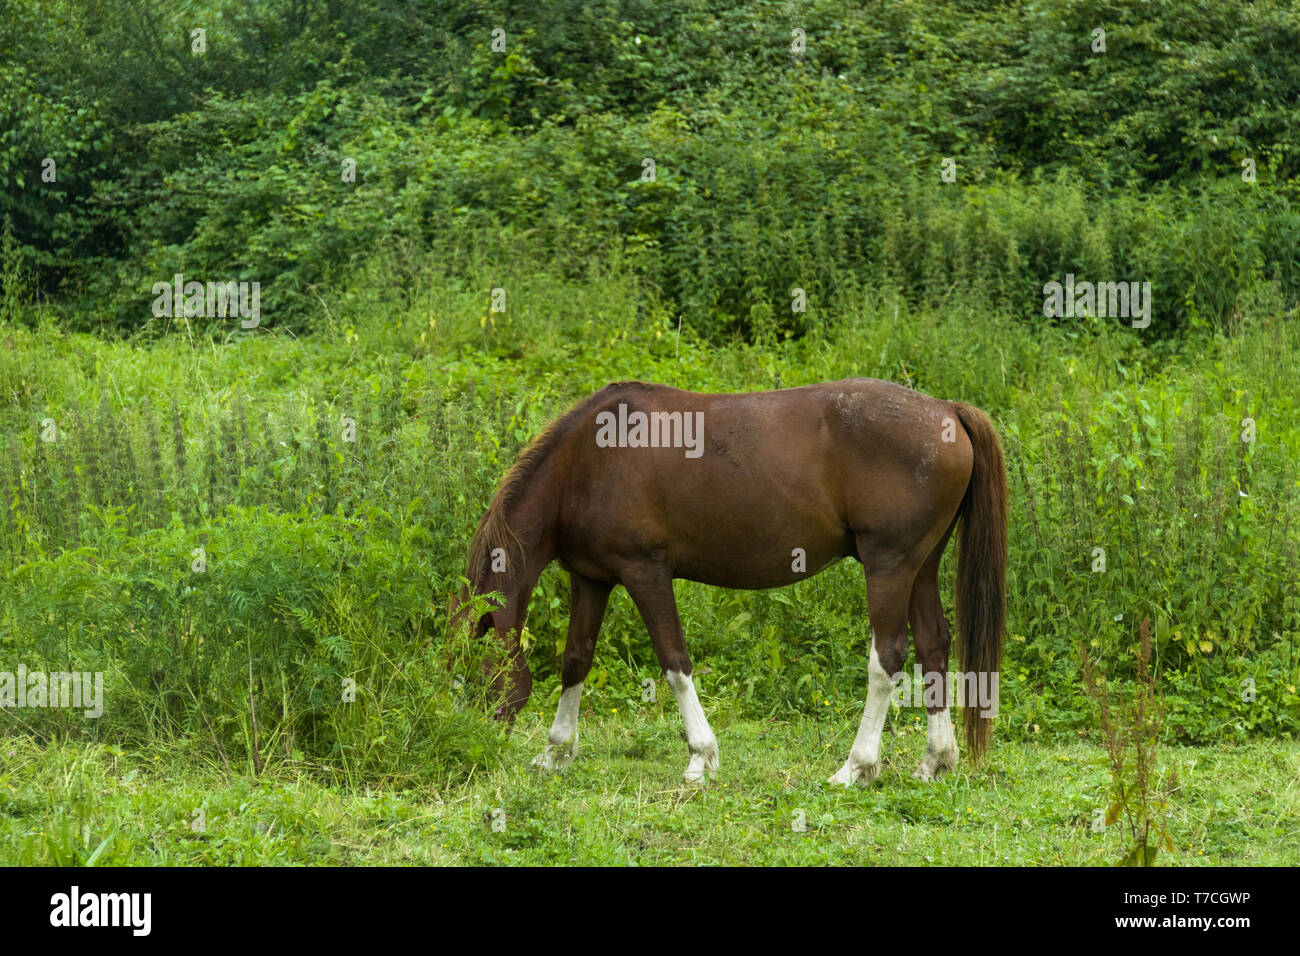 Una vista lateral de un caballo marrón que se alimenta de hierba alta Foto de stock